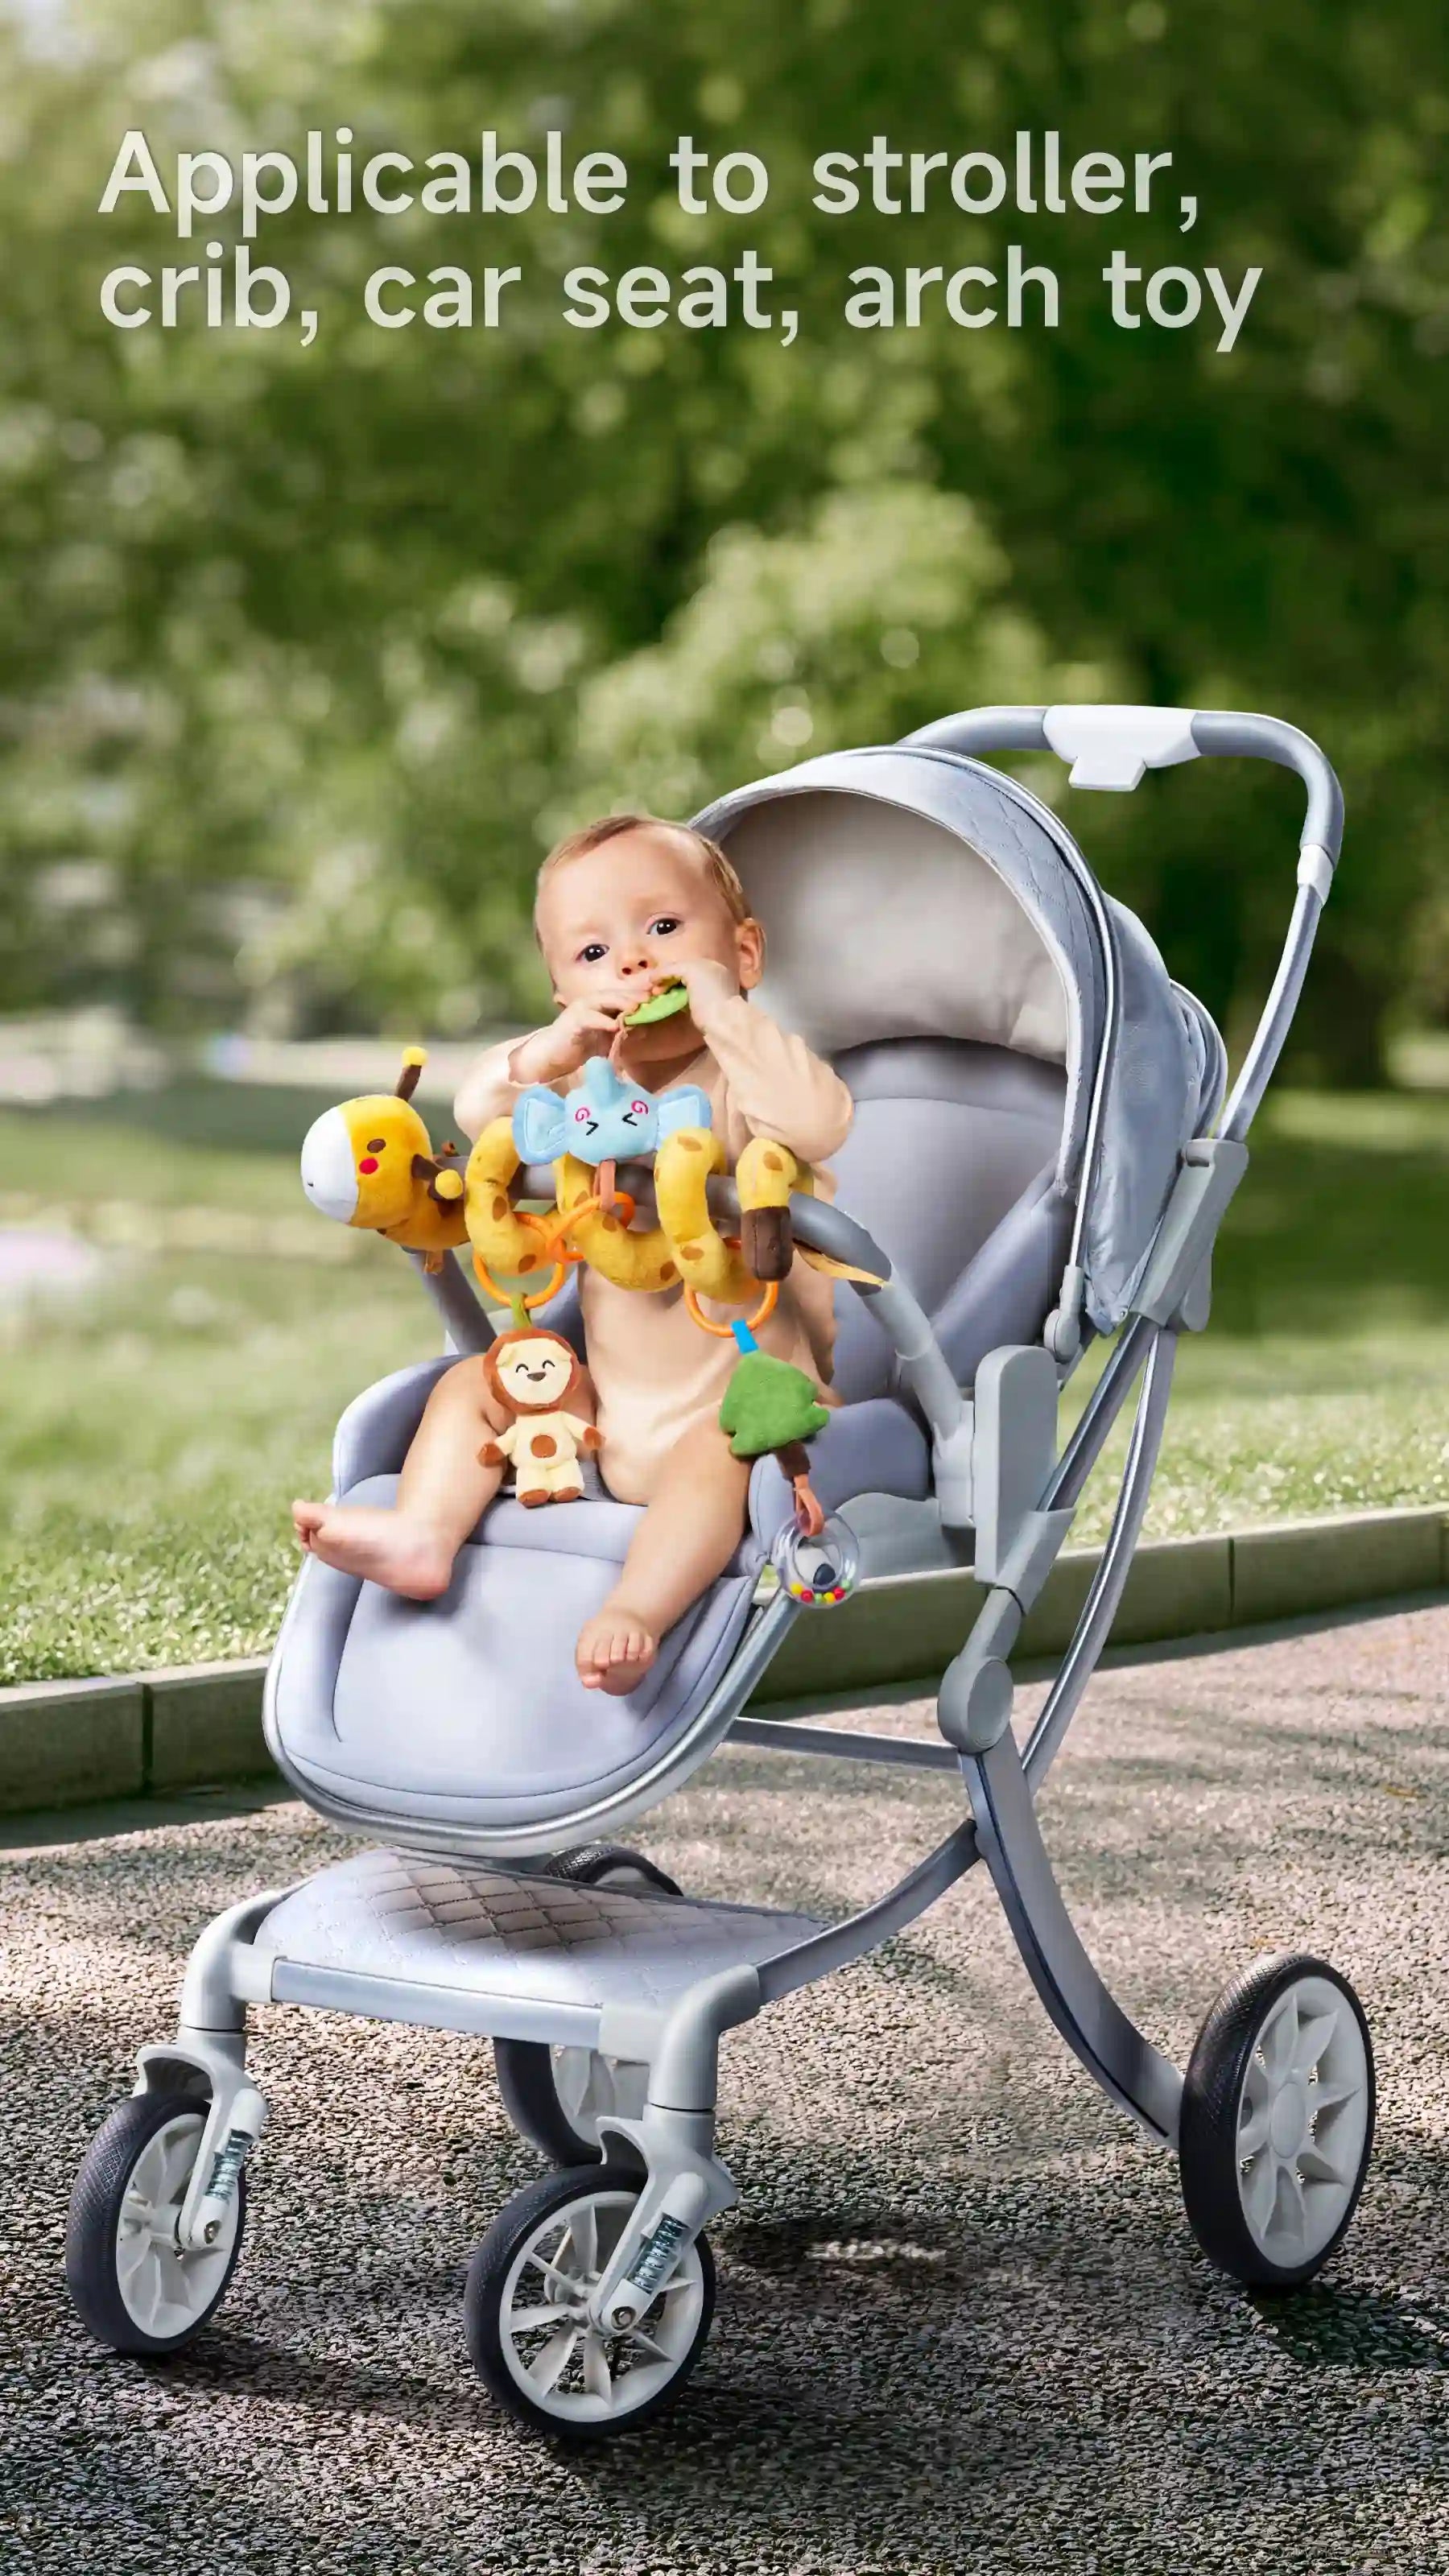 Removable hanging toys for infant stroller